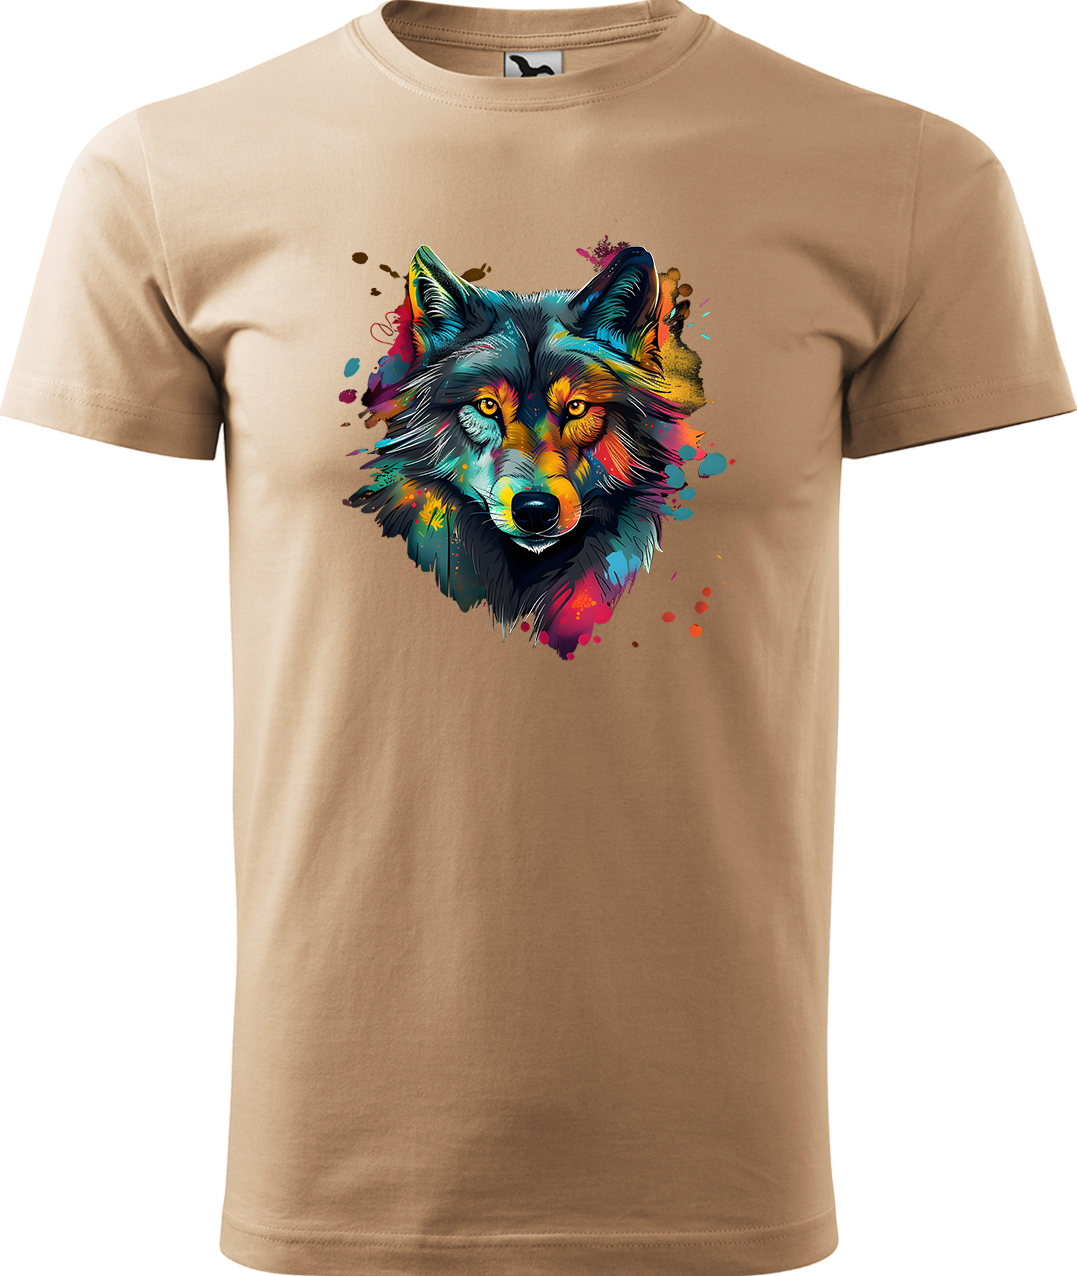 Pánské tričko s vlkem - Malovaný vlk Velikost: XL, Barva: Písková (08), Střih: pánský